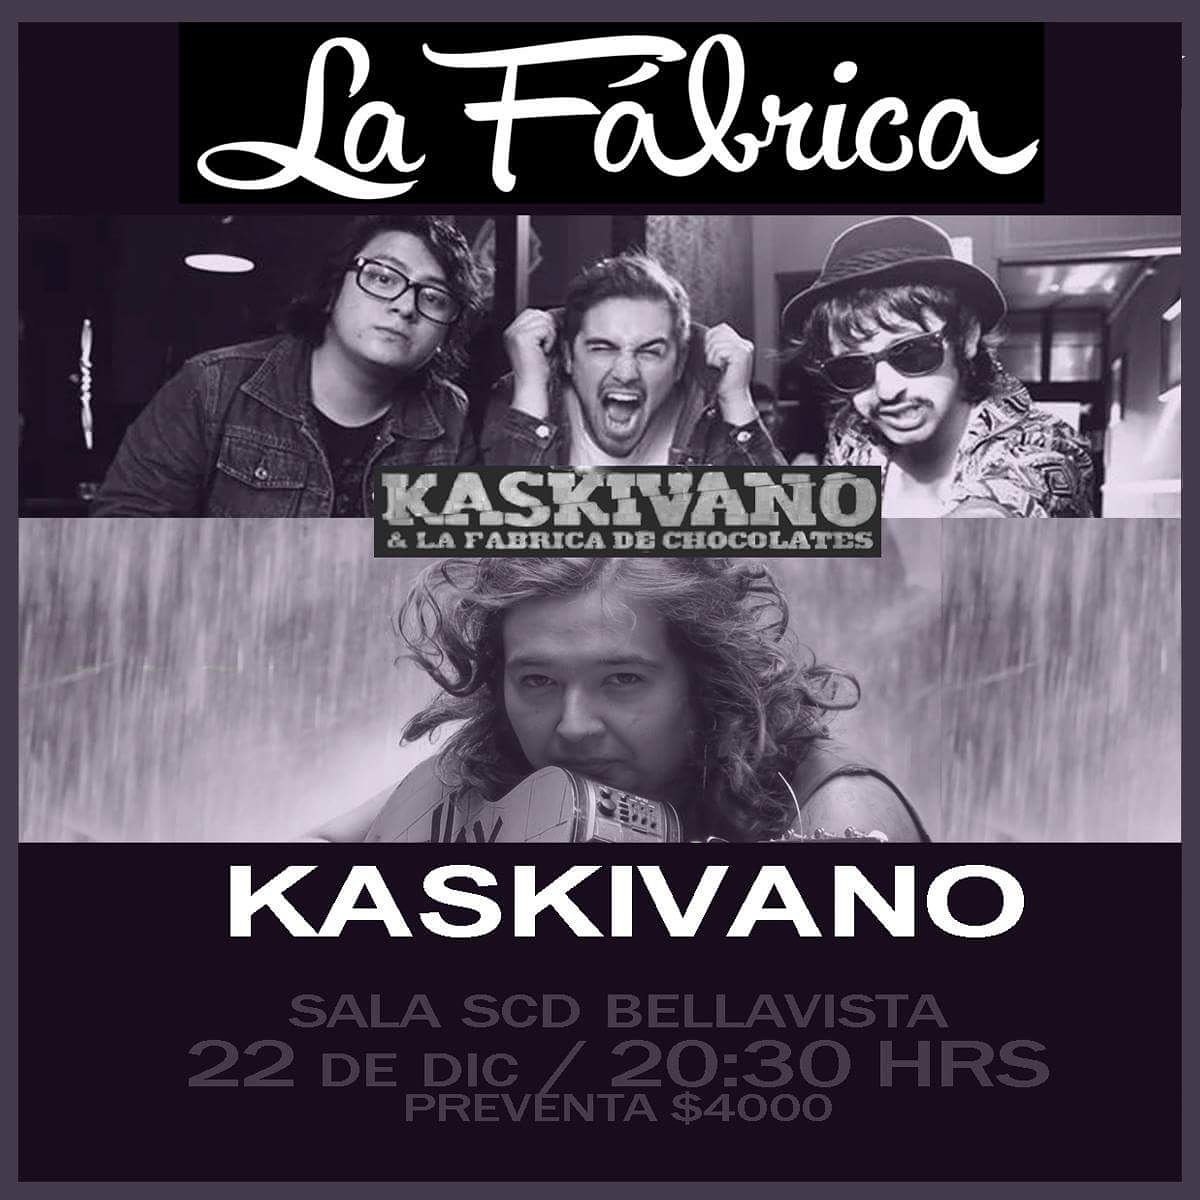 Kaskivano se presenta en Sala SCD y da último show del año